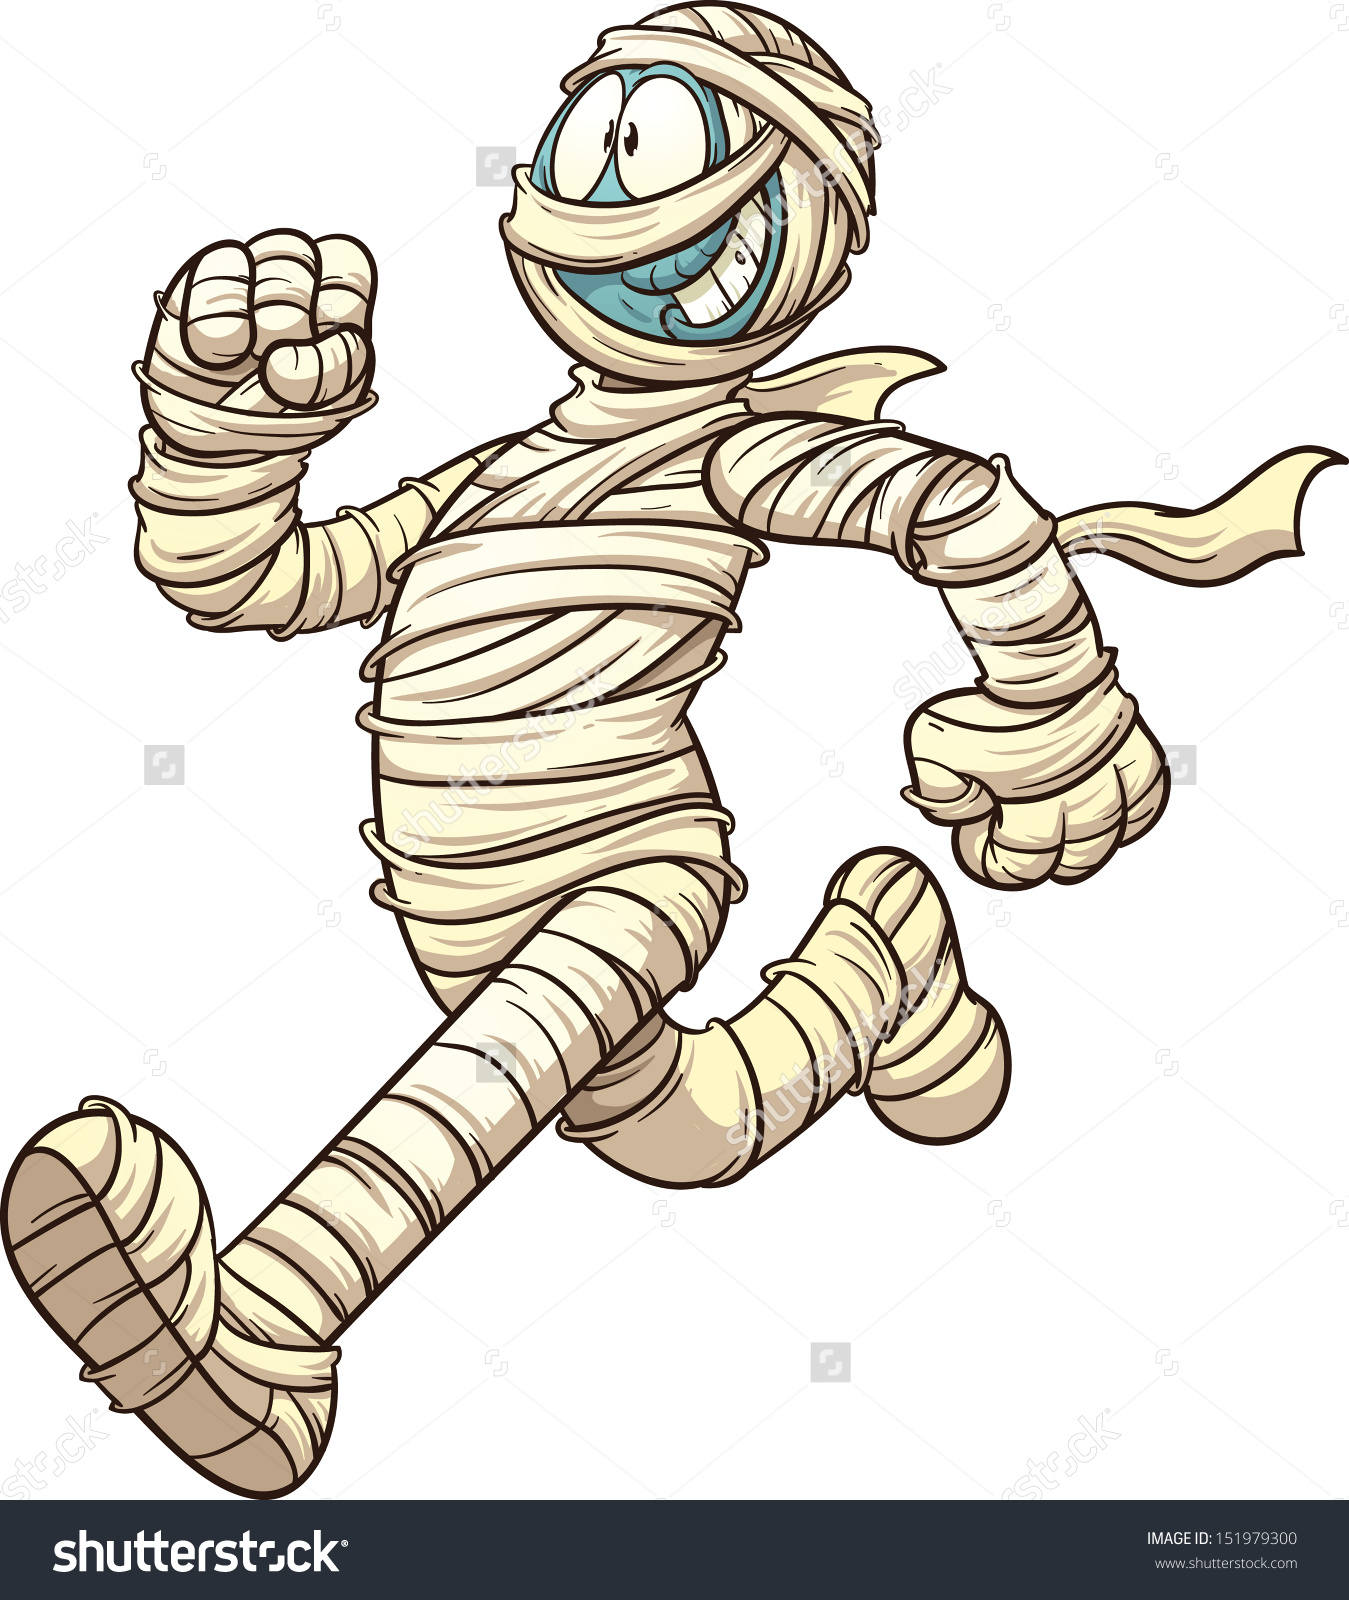 Cartoon Running Mummy Vector Clip Art Stock Vector 151979300.